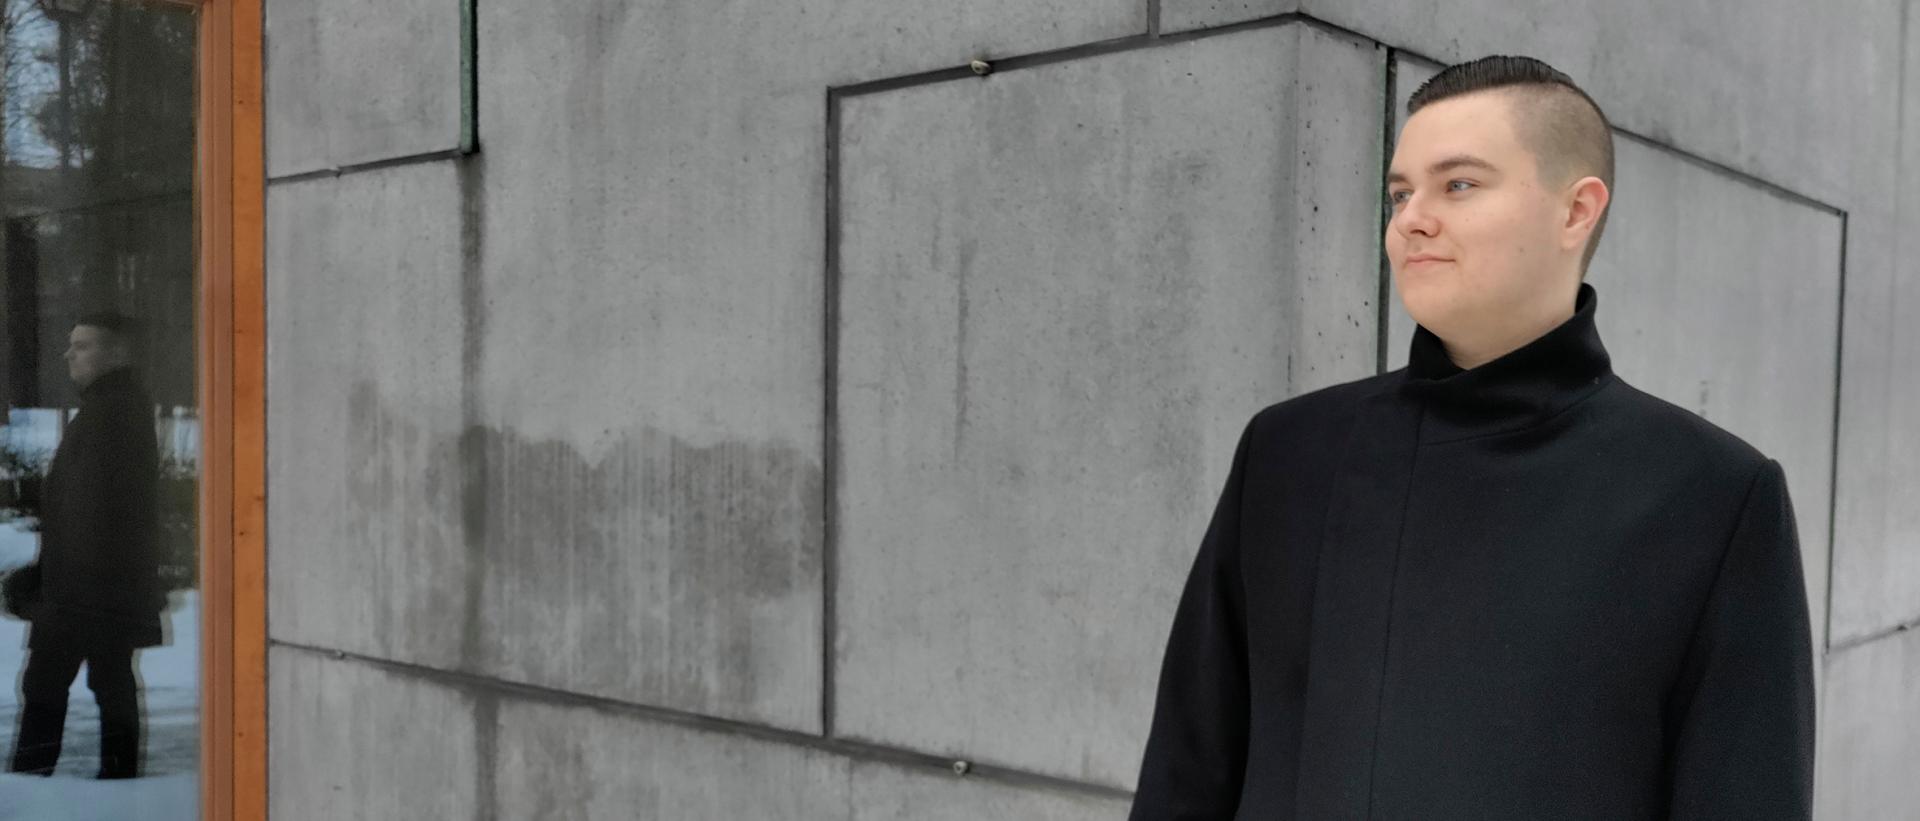 Teologian yo Antti Kosonen kuvattuna Laajasalon kirkon betoniseinää vasten tummassa takissa. Kuva: Remo Ronkainen